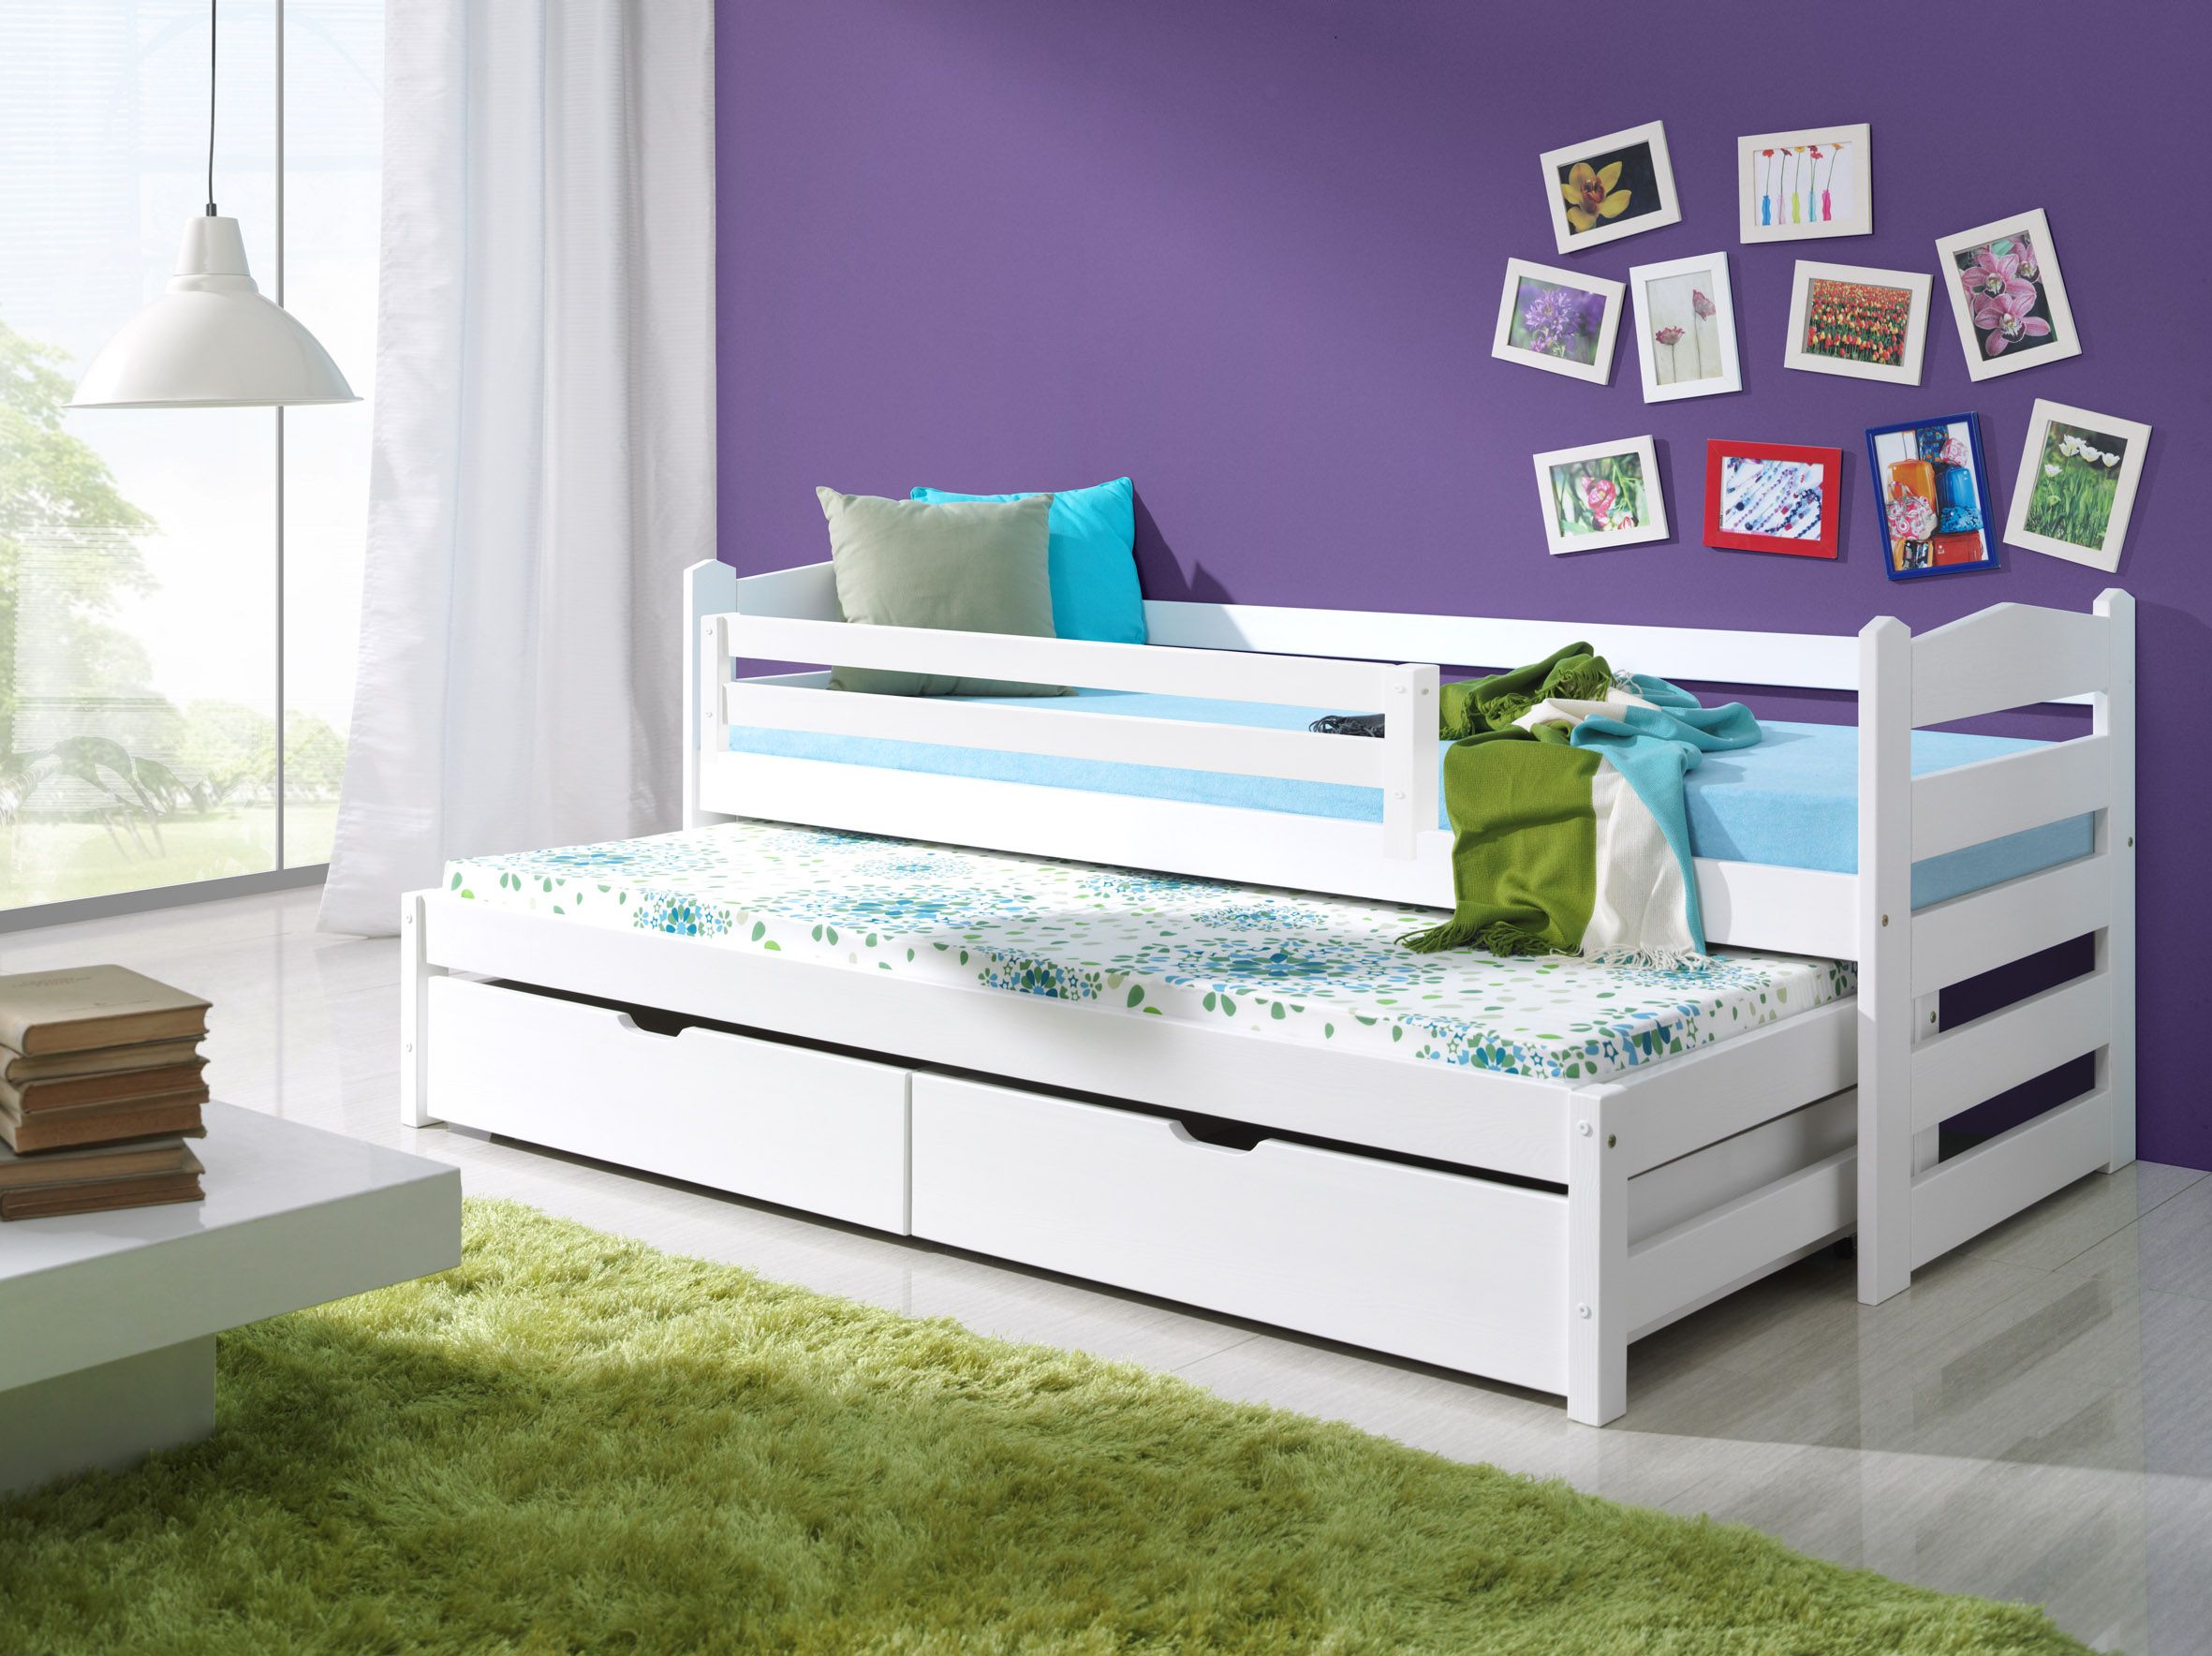 Детская выкатная кровать – выгодное решение для малогабаритной квартиры